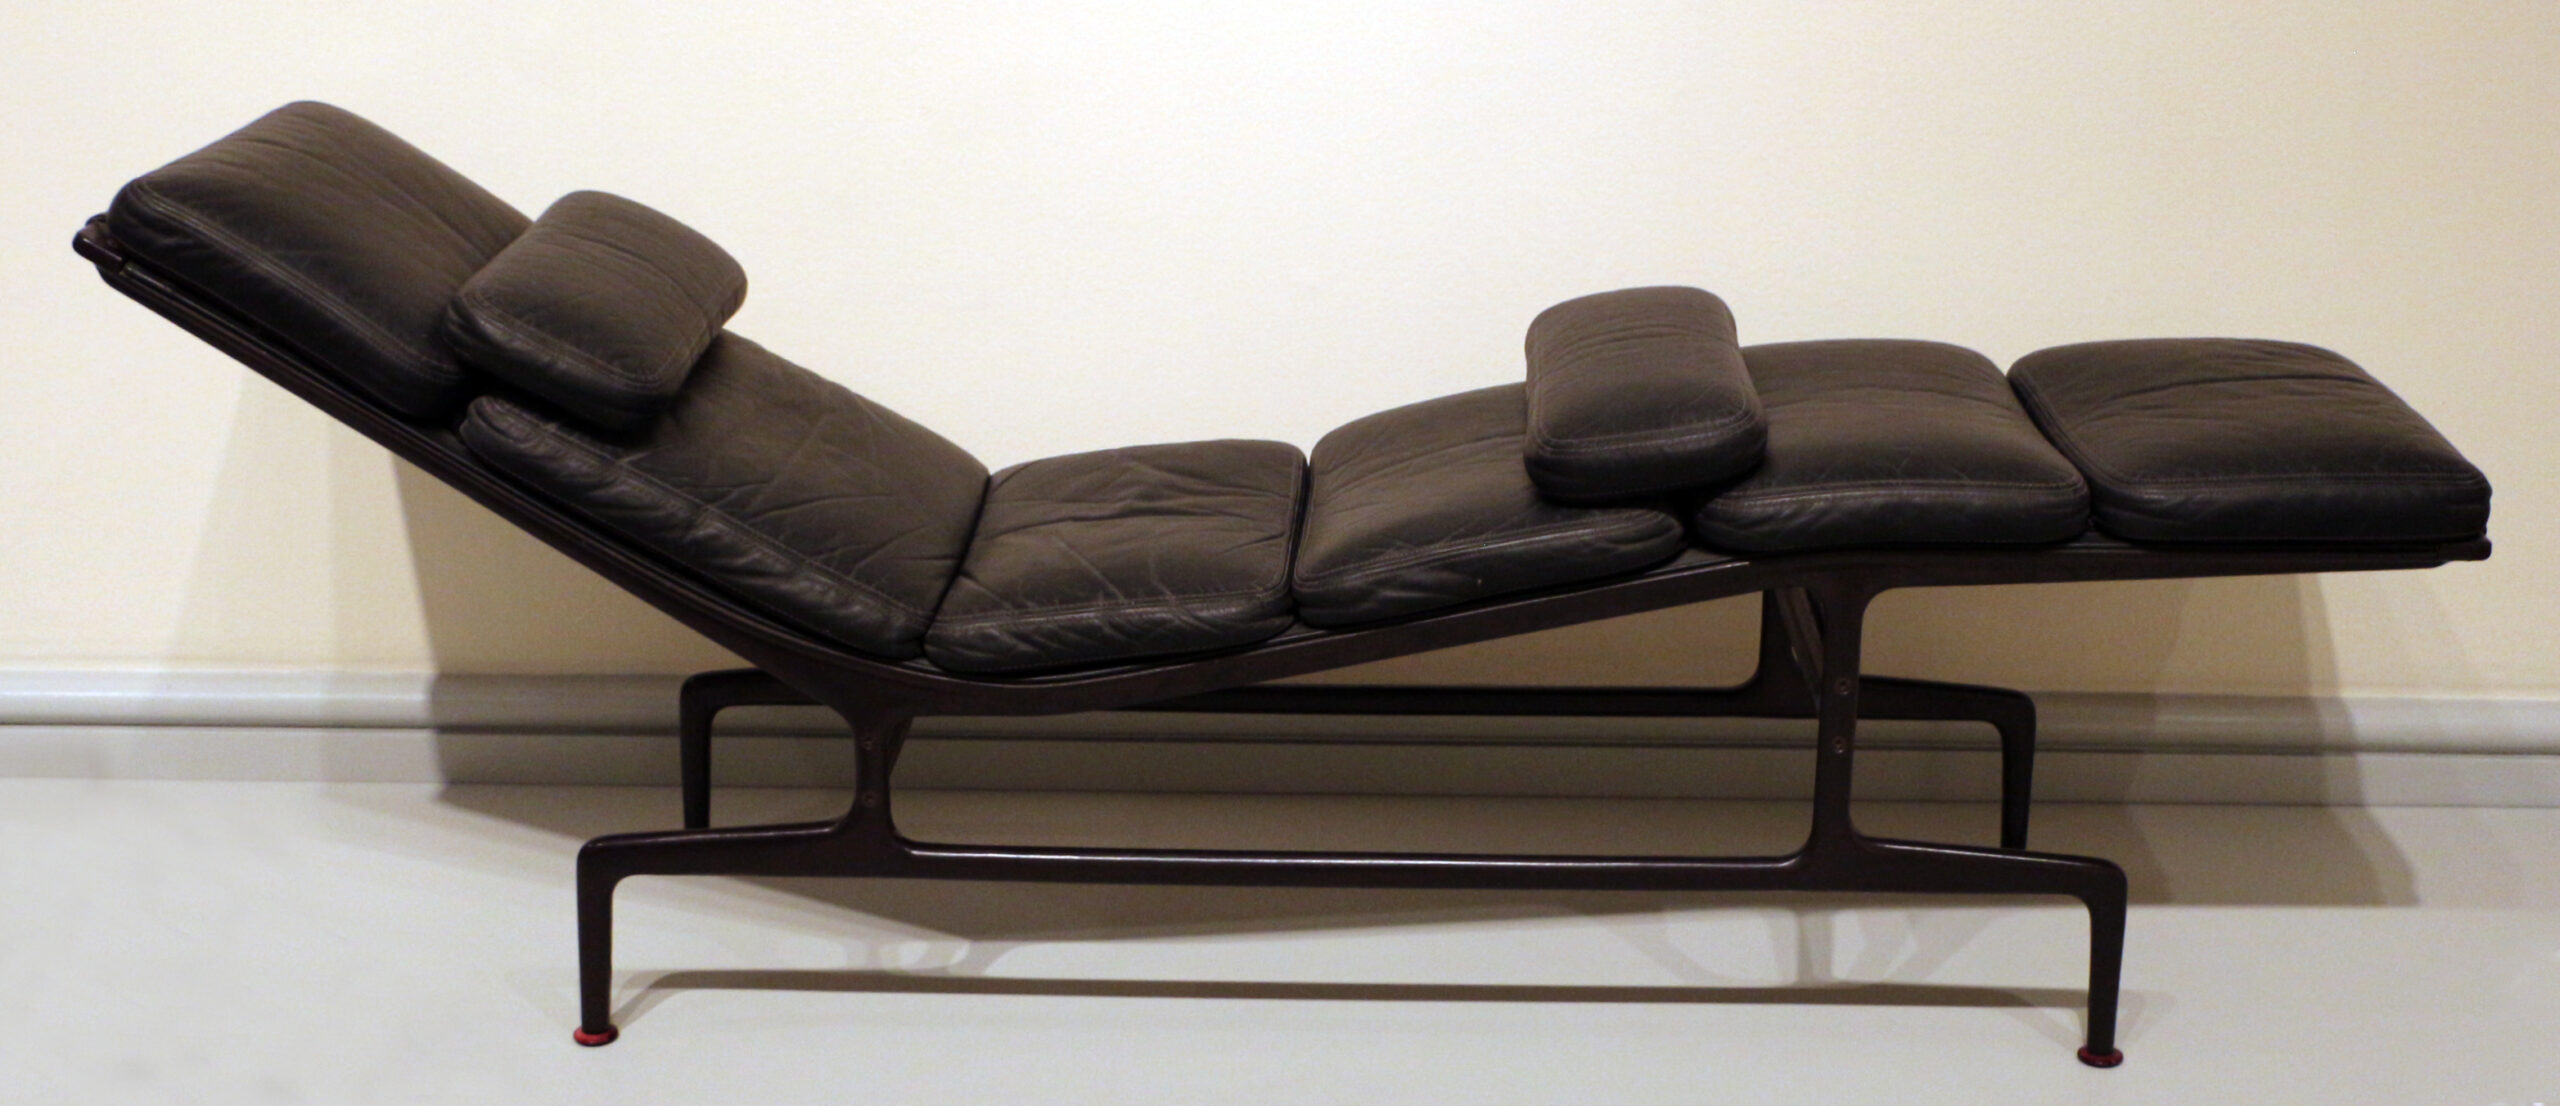 O conforto proporcionado é uma das principais características da Eames Chaise